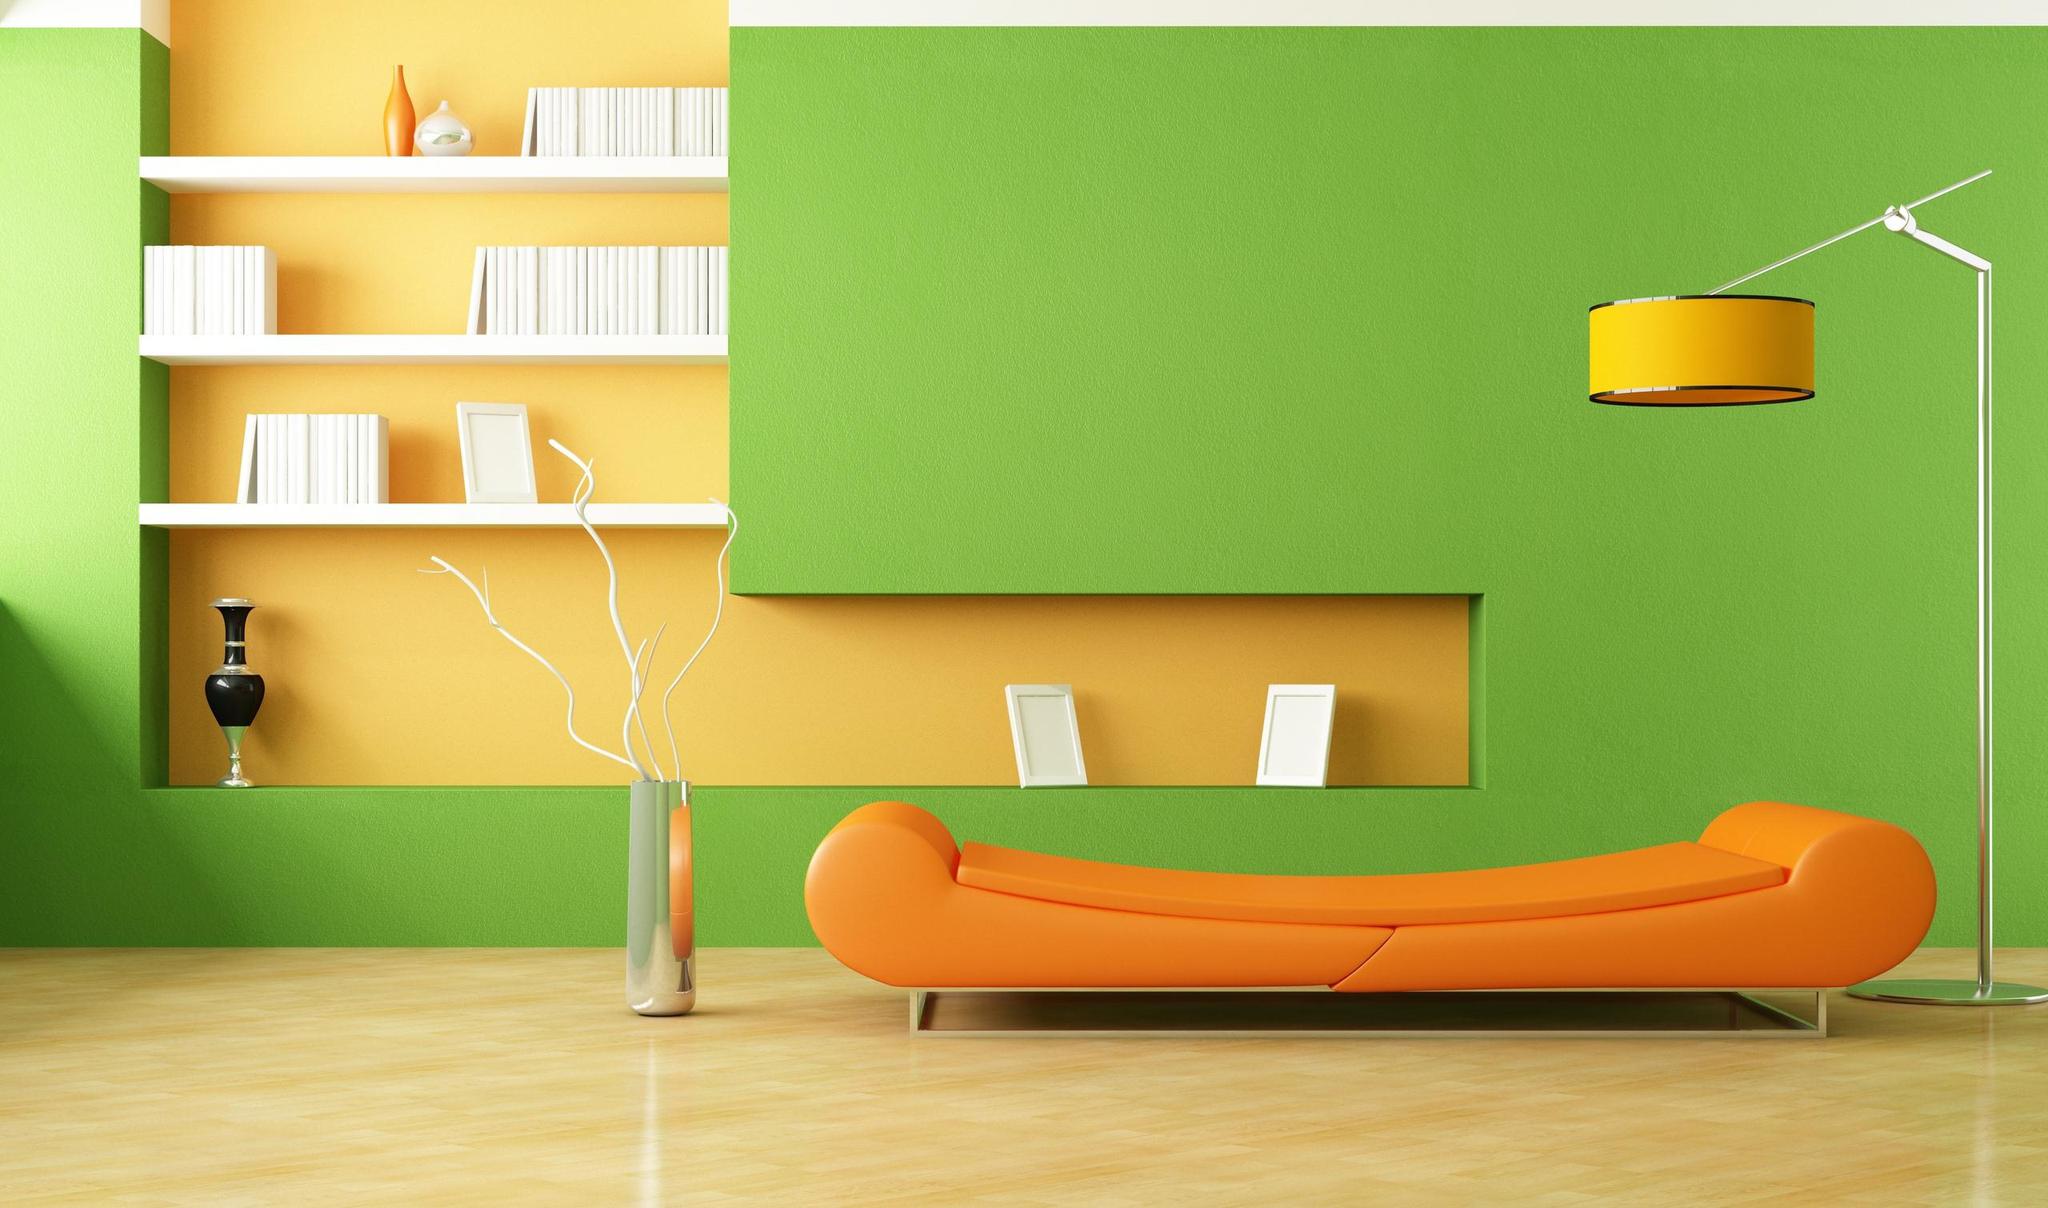 餐厅客厅的墙面都是橙色的 ，电视墙的墙纸配什么颜色搭配合适 ？ 绿色部分配什么颜色墙纸比较搭配 ？_百度知道